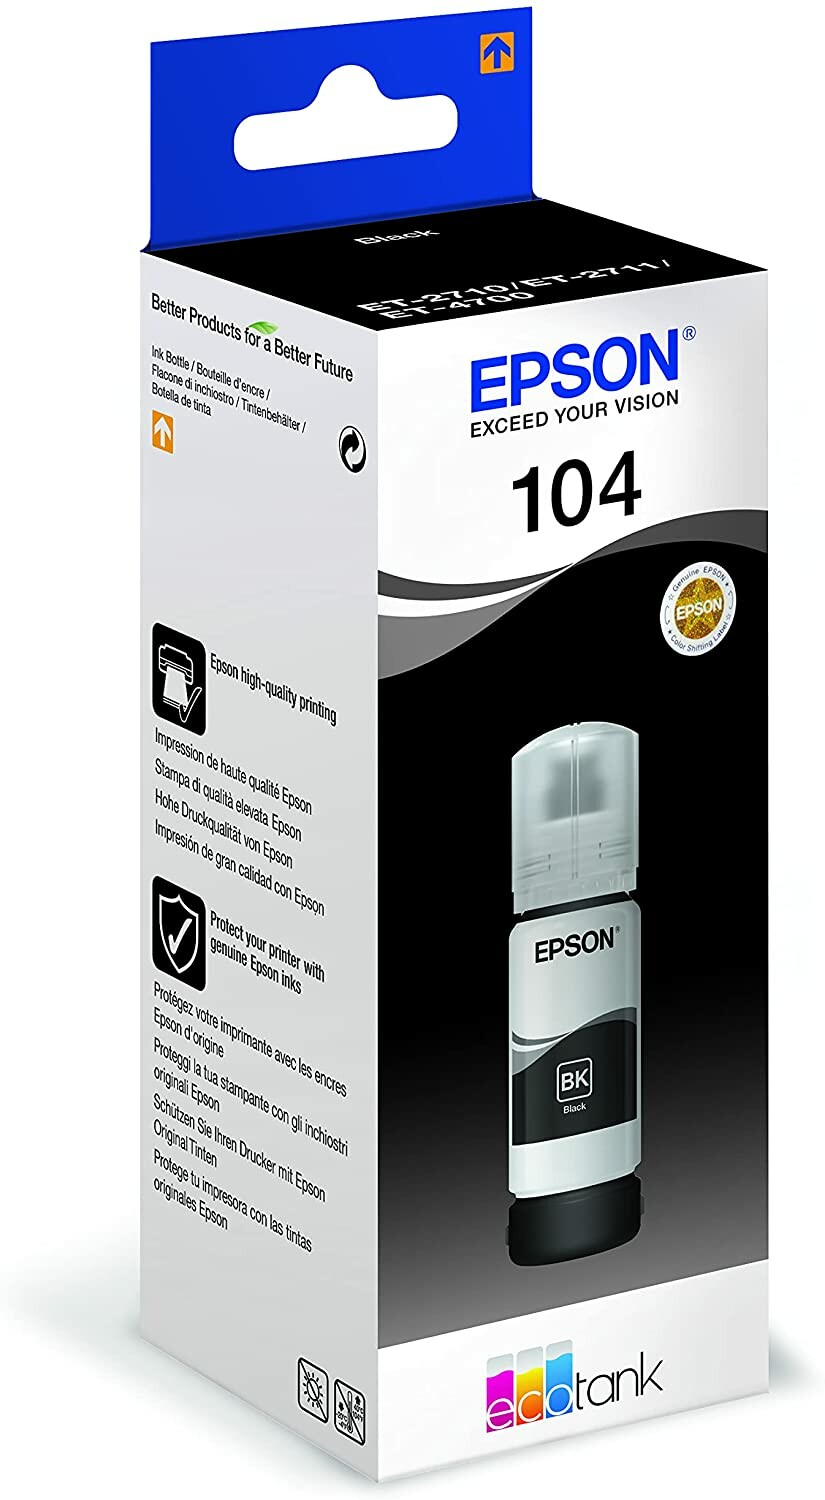 Epson EcoTank ET-2810 - Imprimante jet d'encre Epson sur